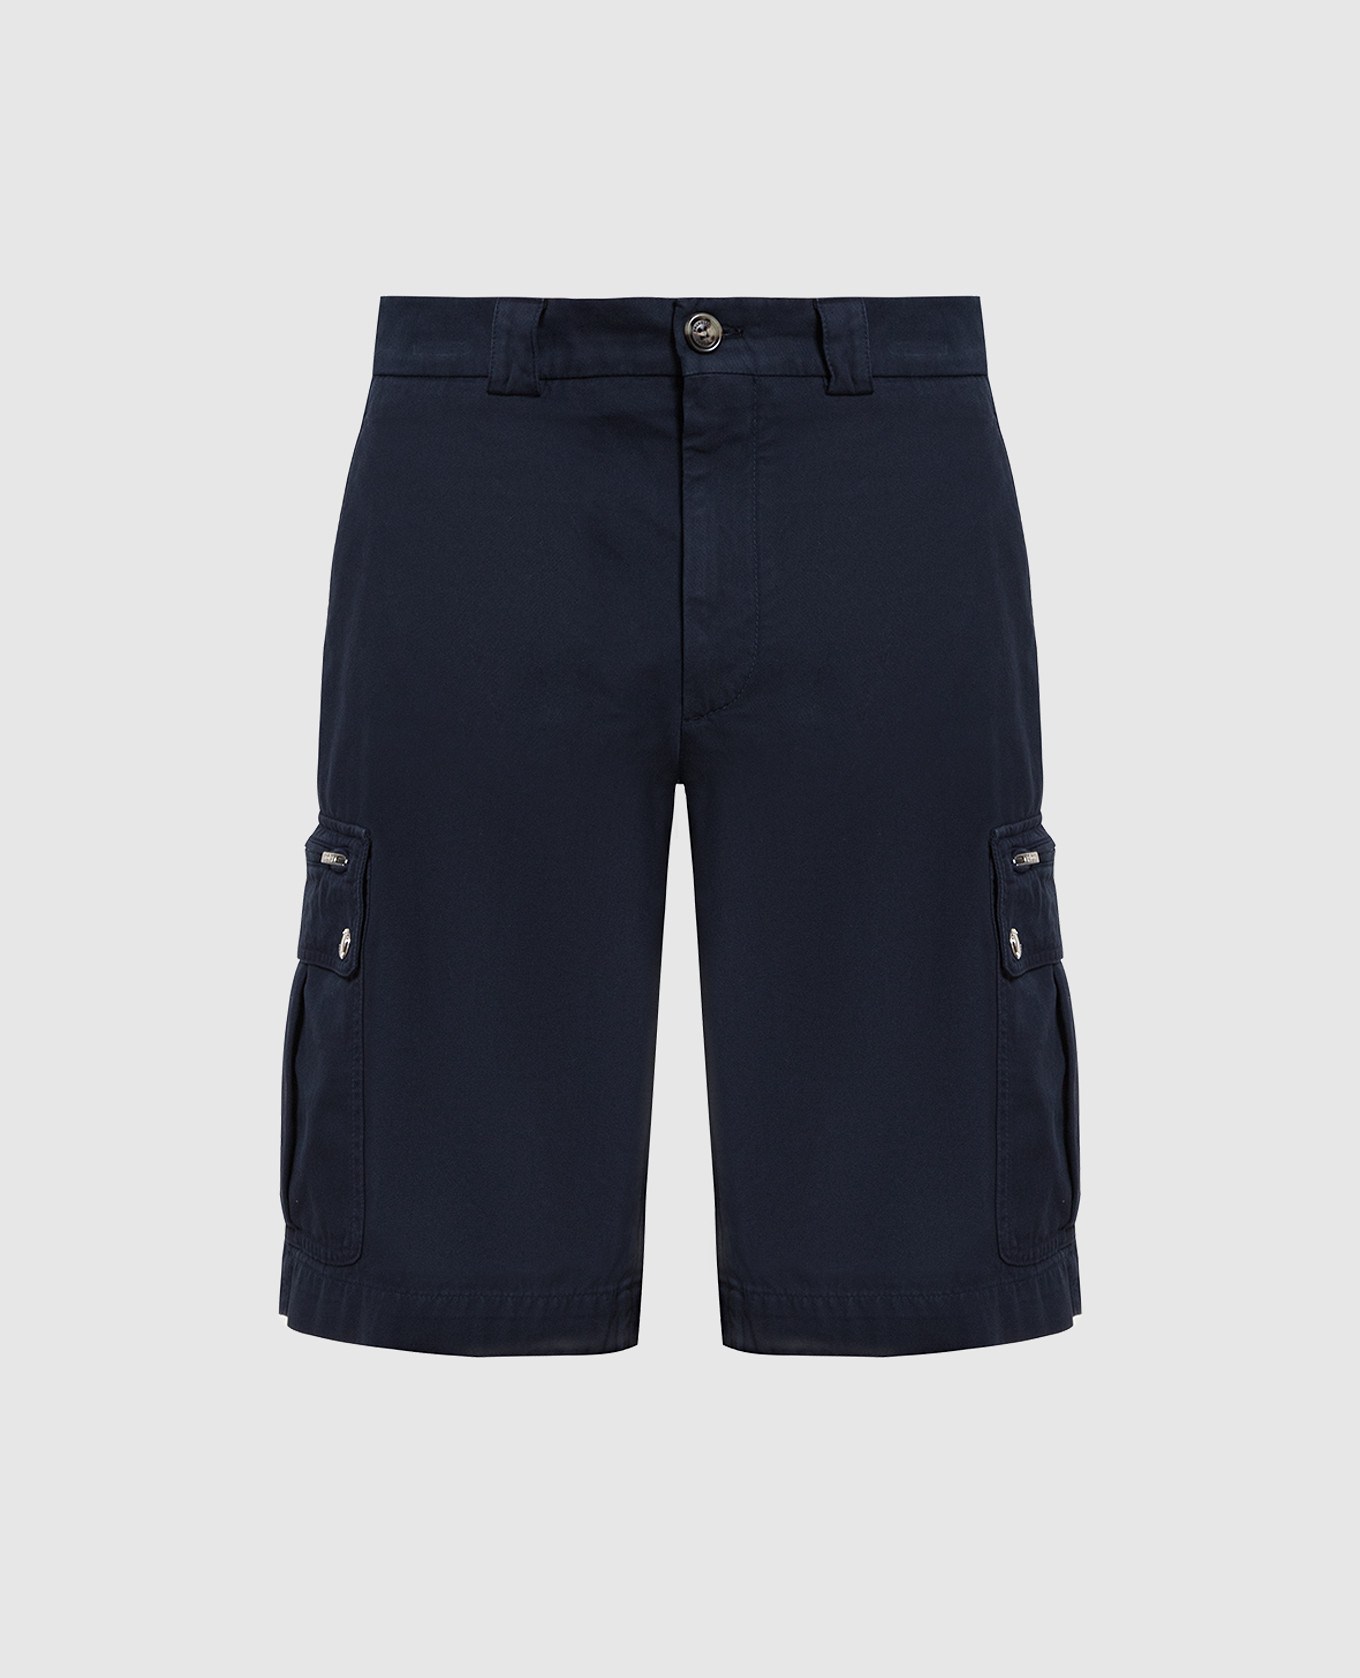 Blue cargo shorts